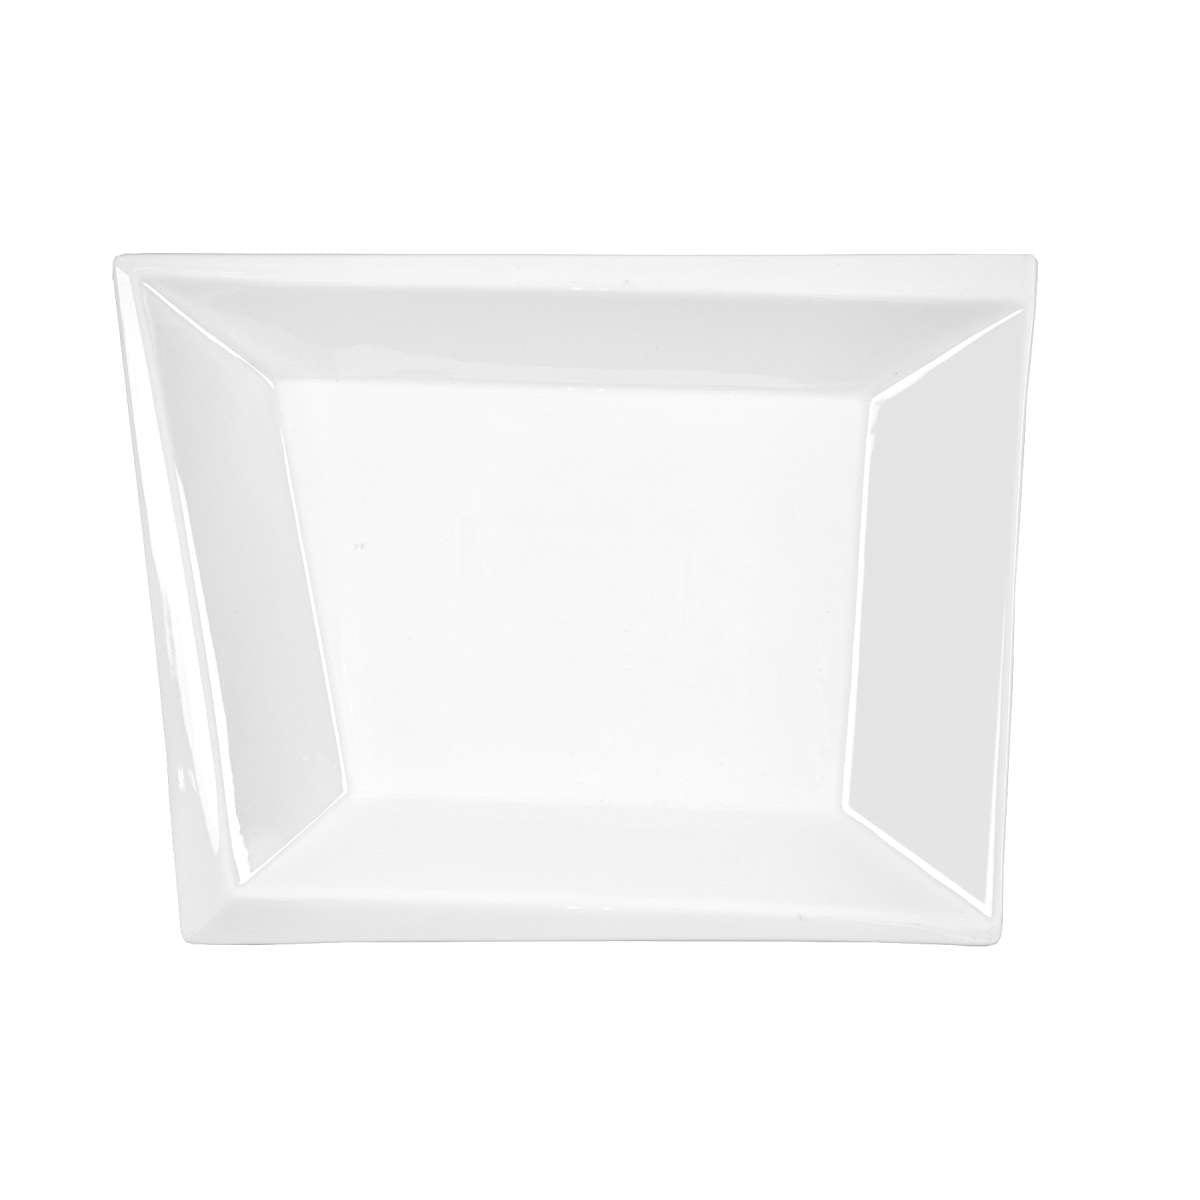 Πιατέλα Πορσελάνης Τετράγωνη Λευκή Art Et Lumiere 32x27x3,5εκ. 05982 (Υλικό: Πορσελάνη, Χρώμα: Λευκό) - Art Et Lumiere - lumiere_05982